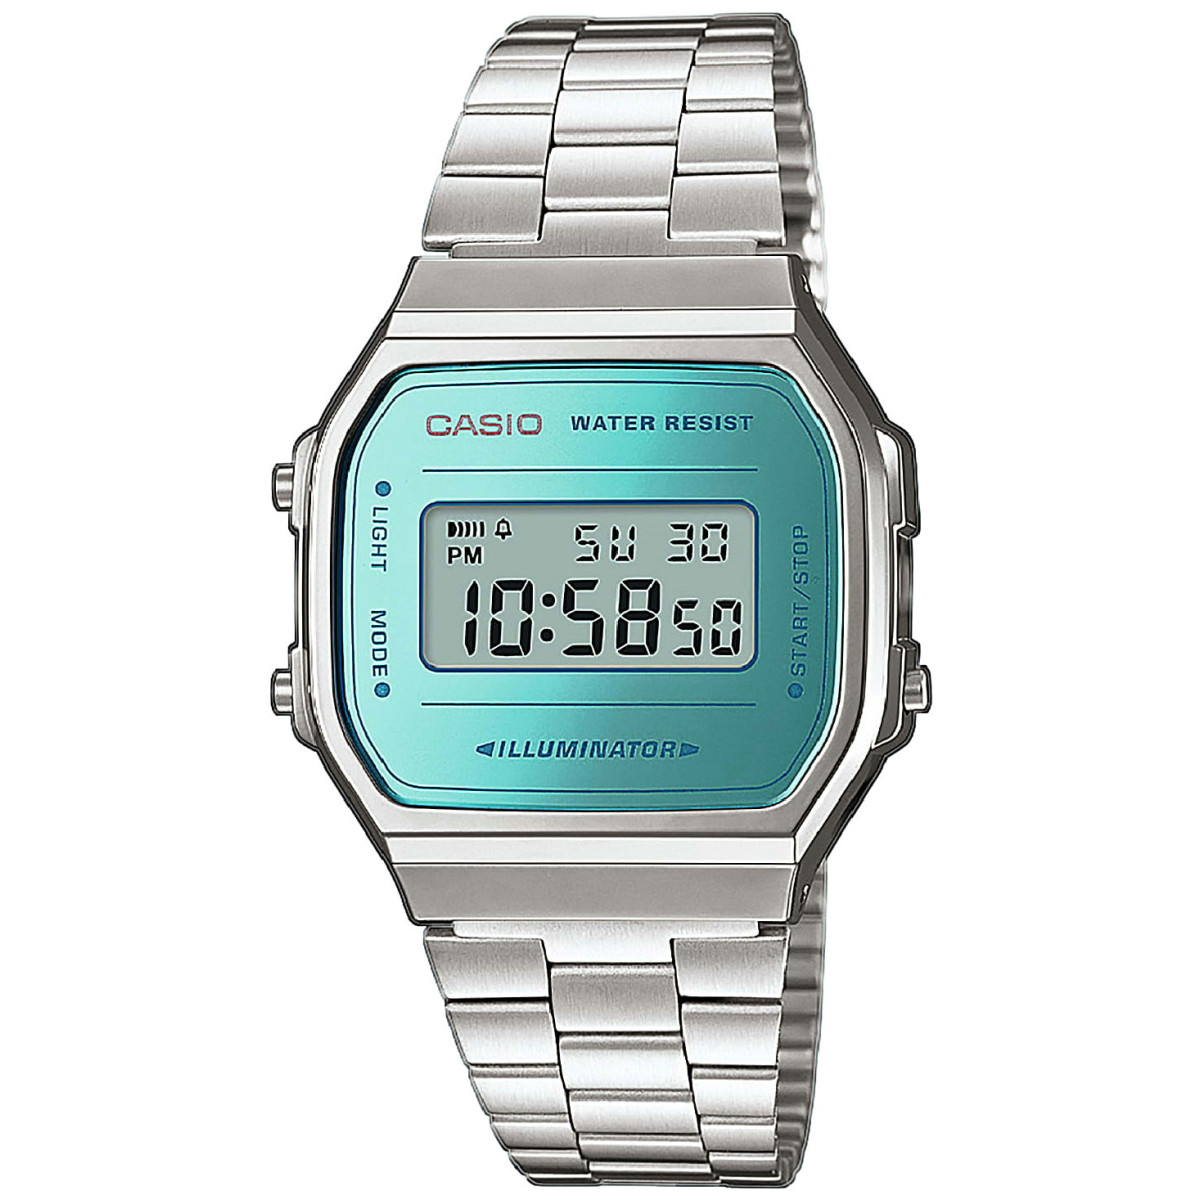 Casio Original A168WEM-2EF Reloj Mujer Digital Plateado - 000360091